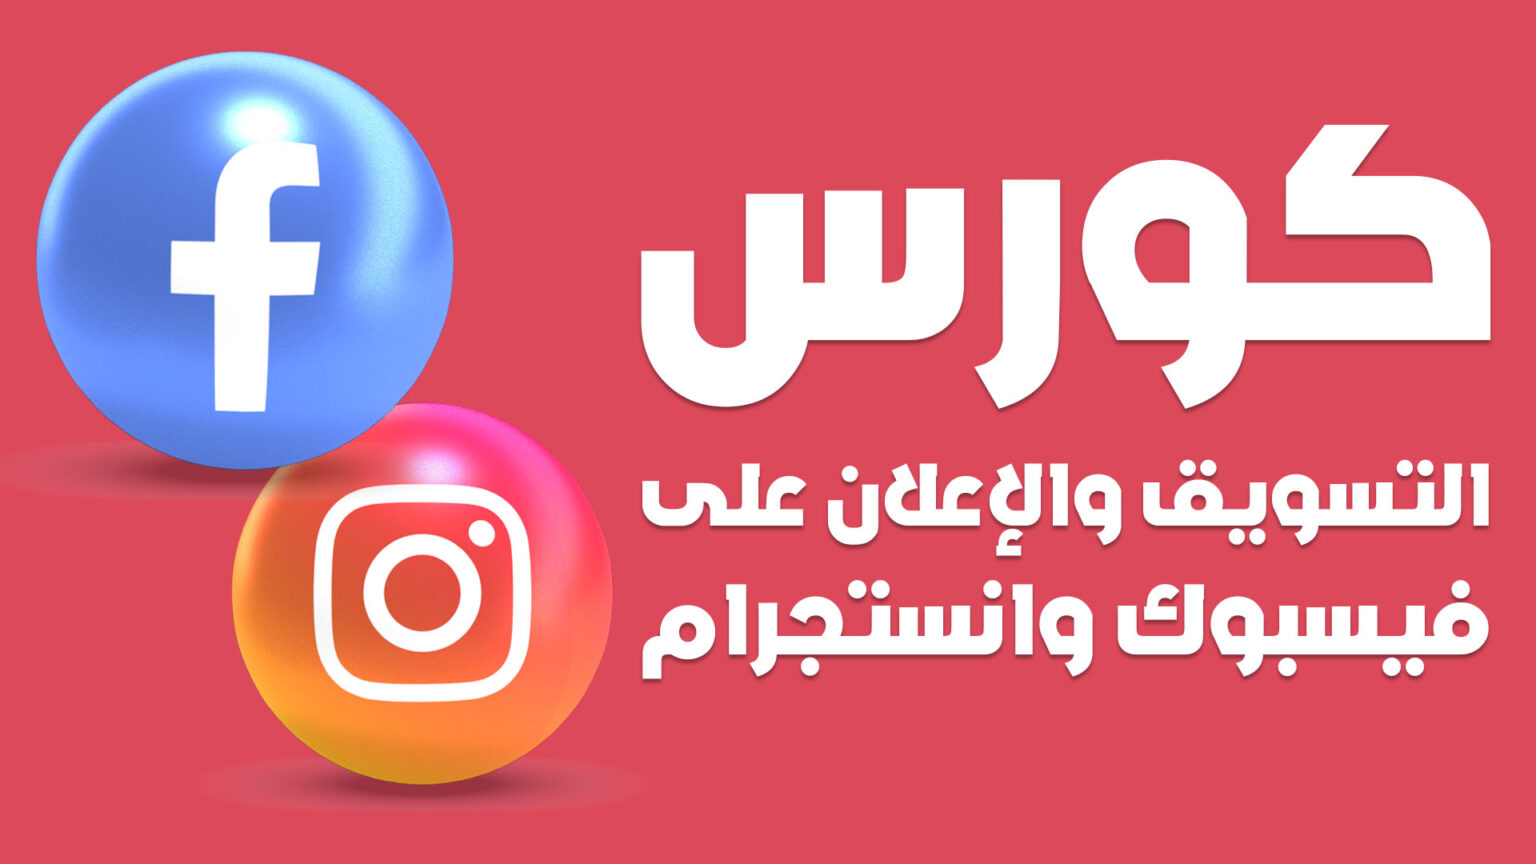 cover كورس التسويق والاعلان على فيسبوك وانستجرام